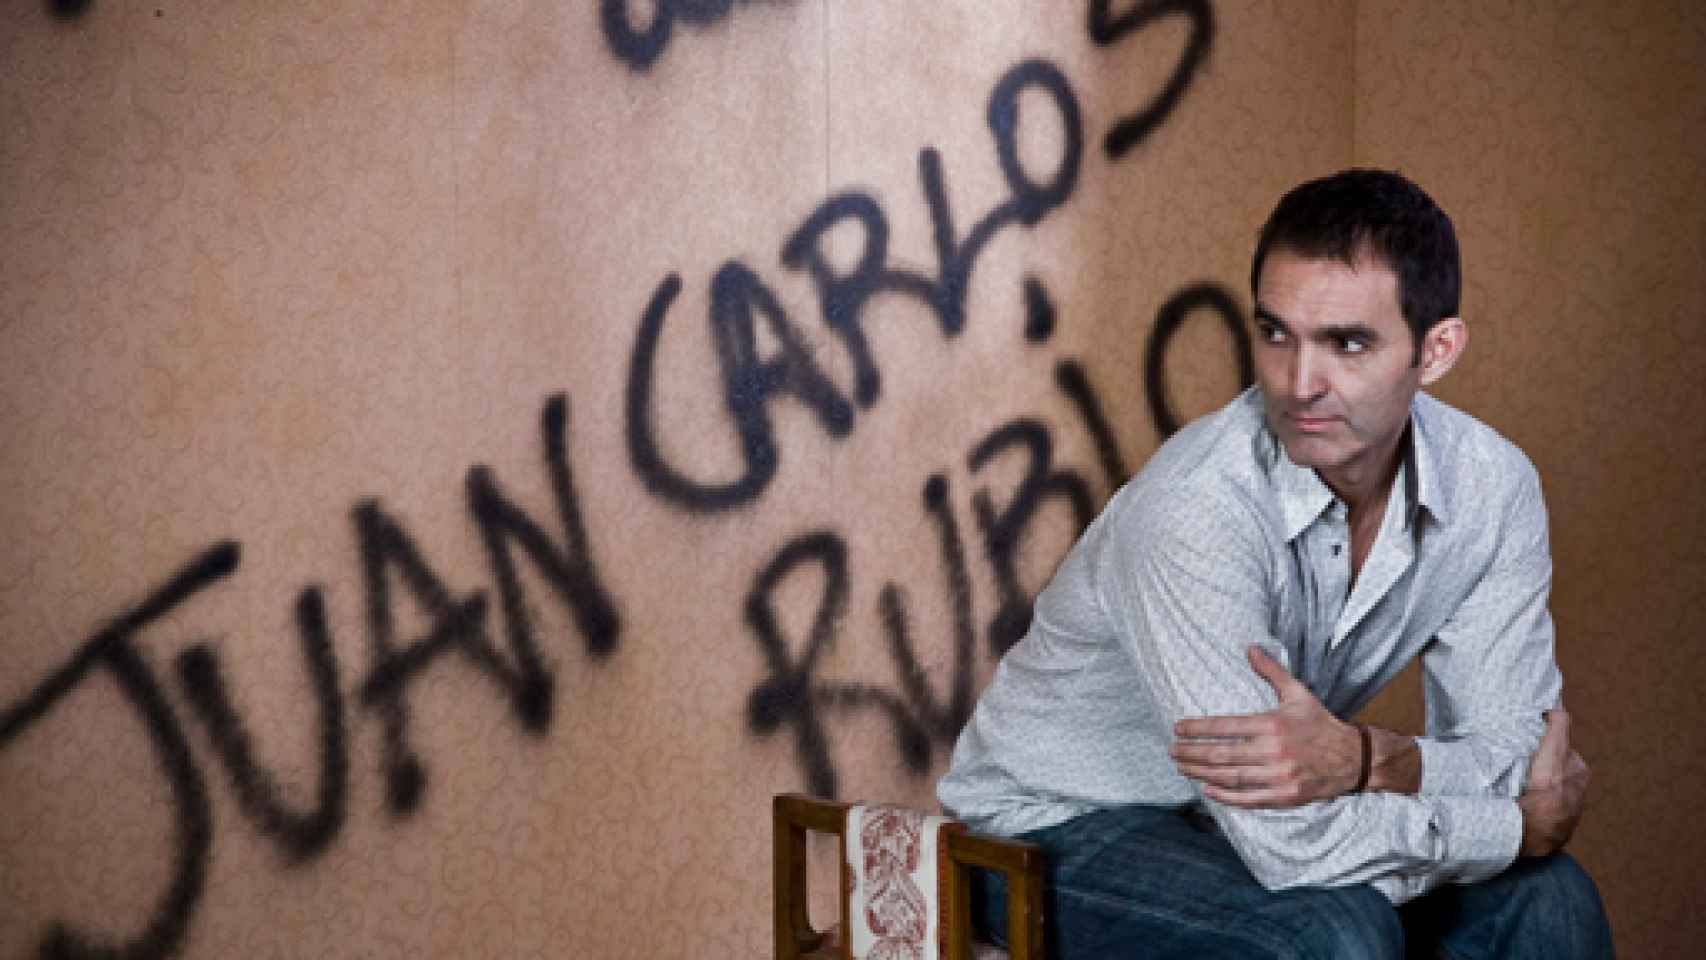 Image: Juan Carlos Rubio: Todo lo que veo lo convierto en teatro, soy un hábil ladrón